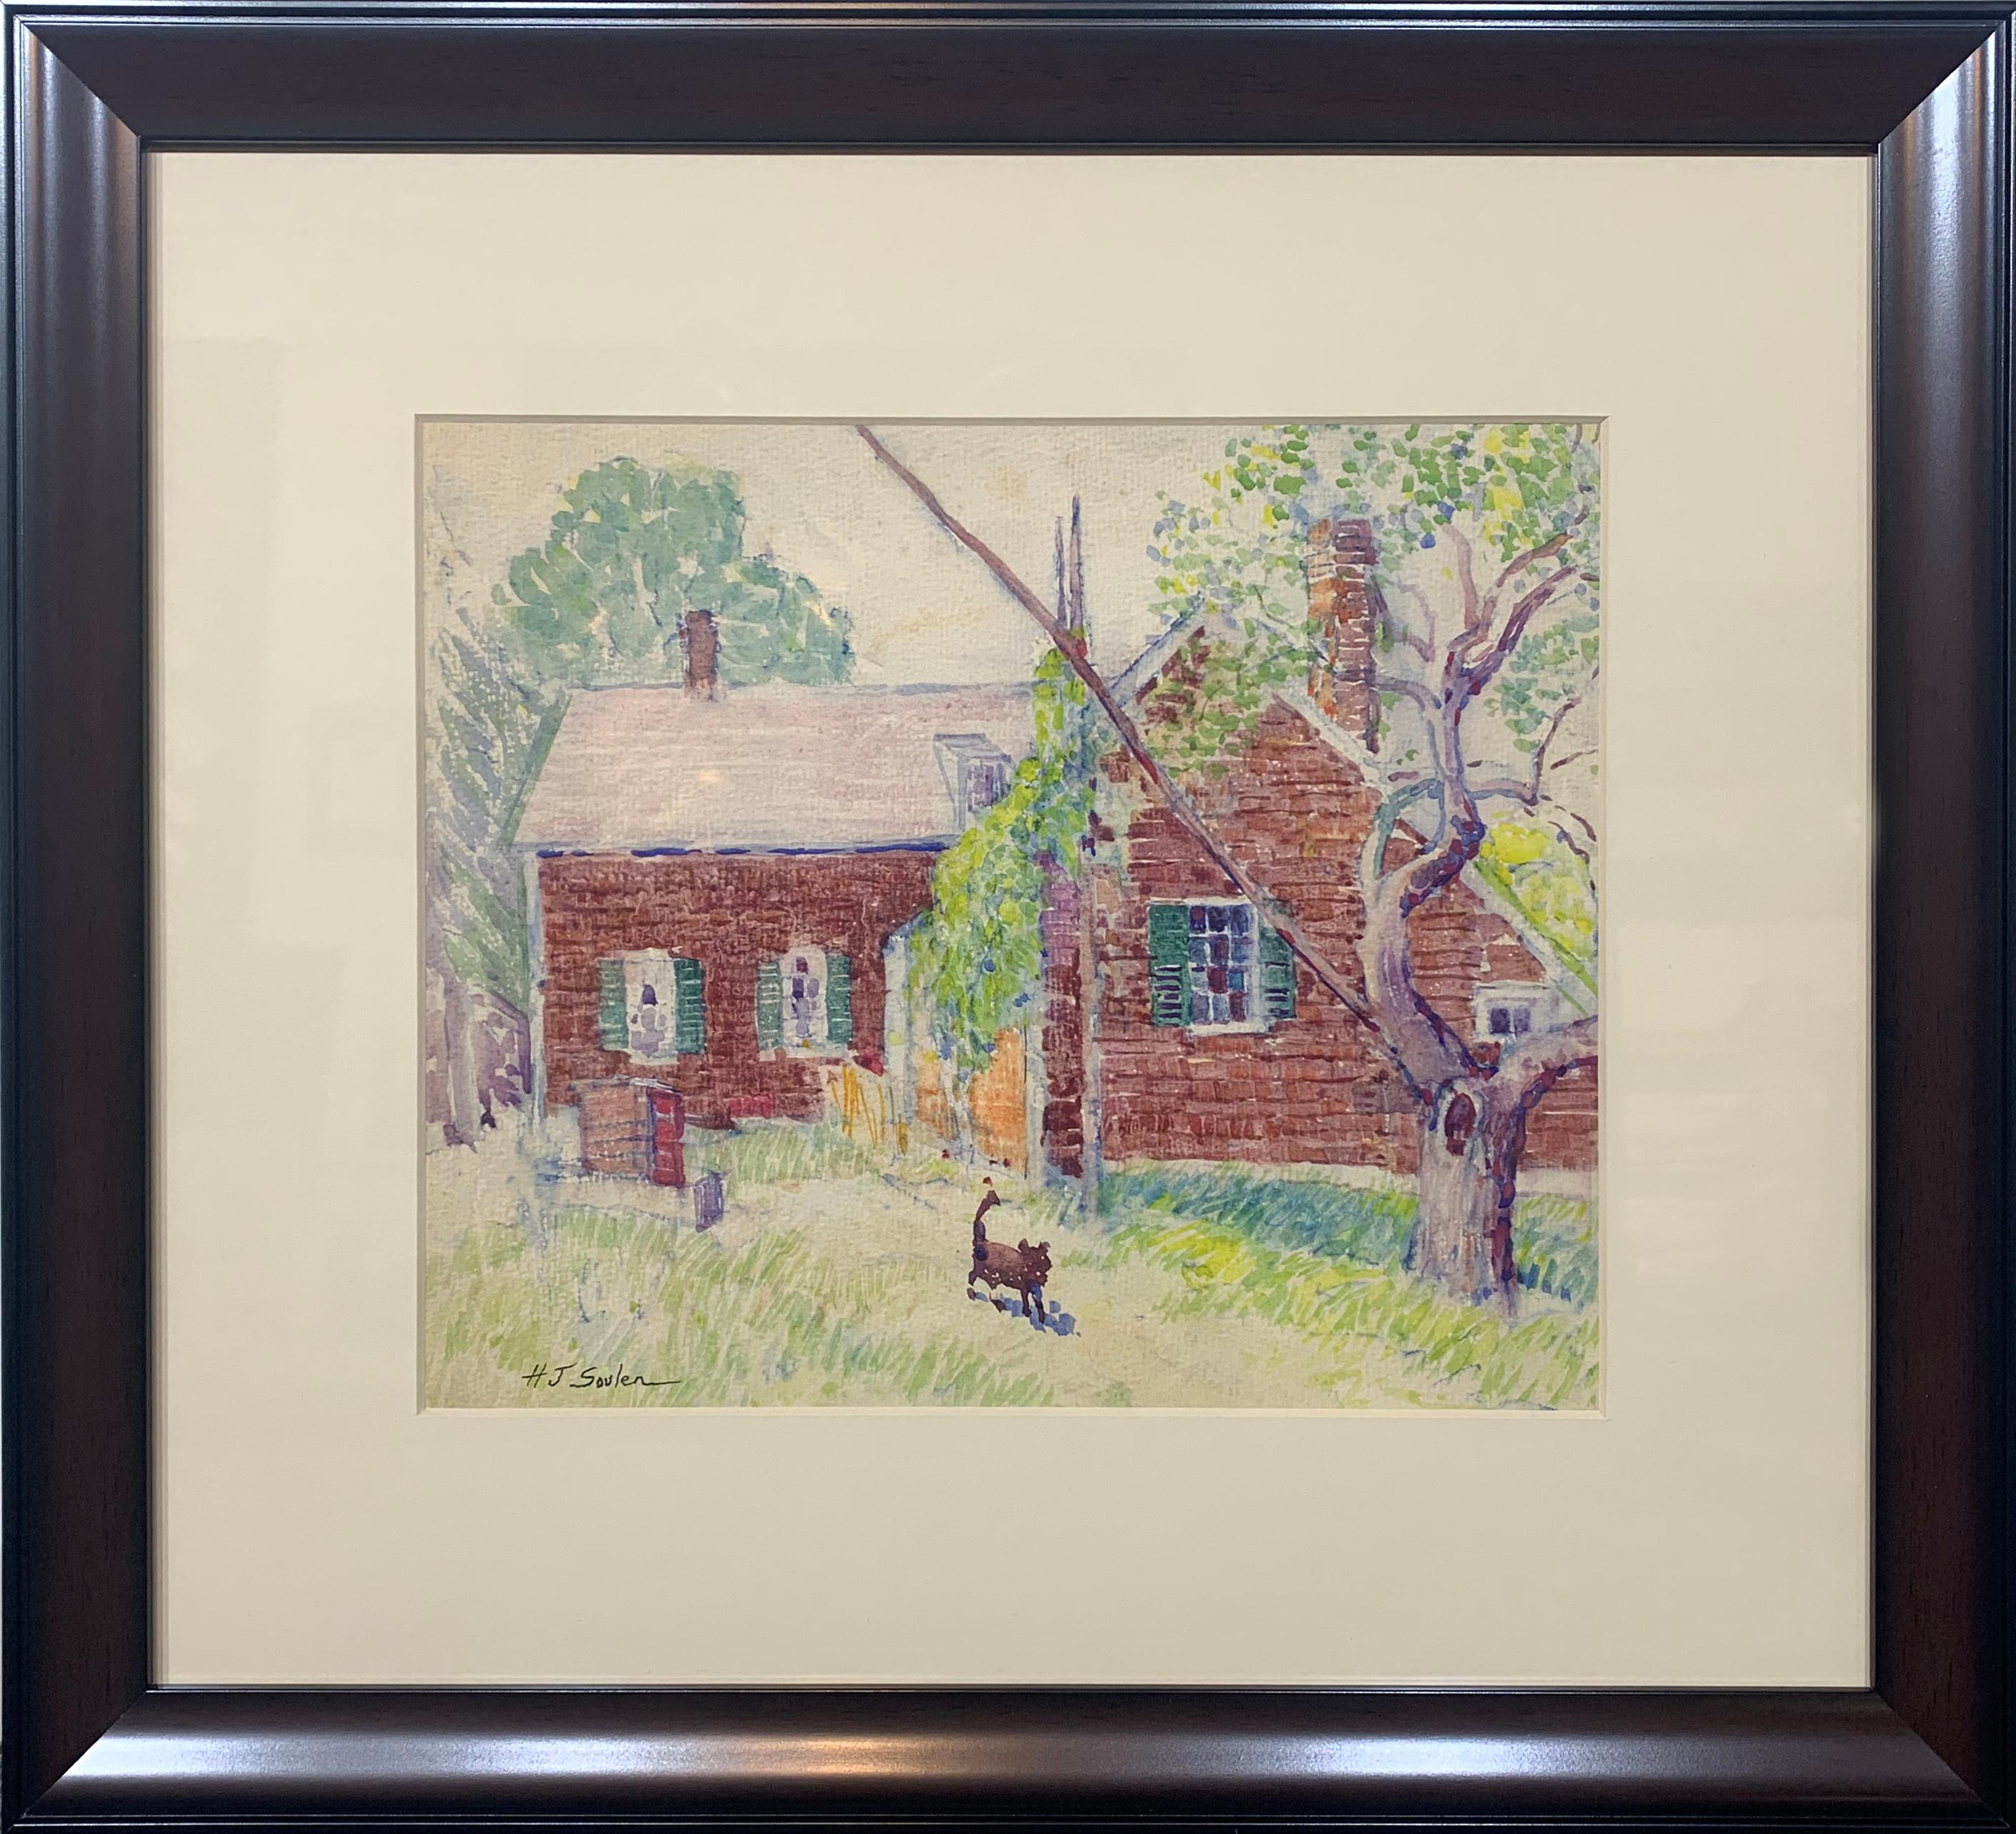 Henry Soulen Landscape Art - Country Farmhouse with Dog, Watercolor on Paper, Landscape, Original Art